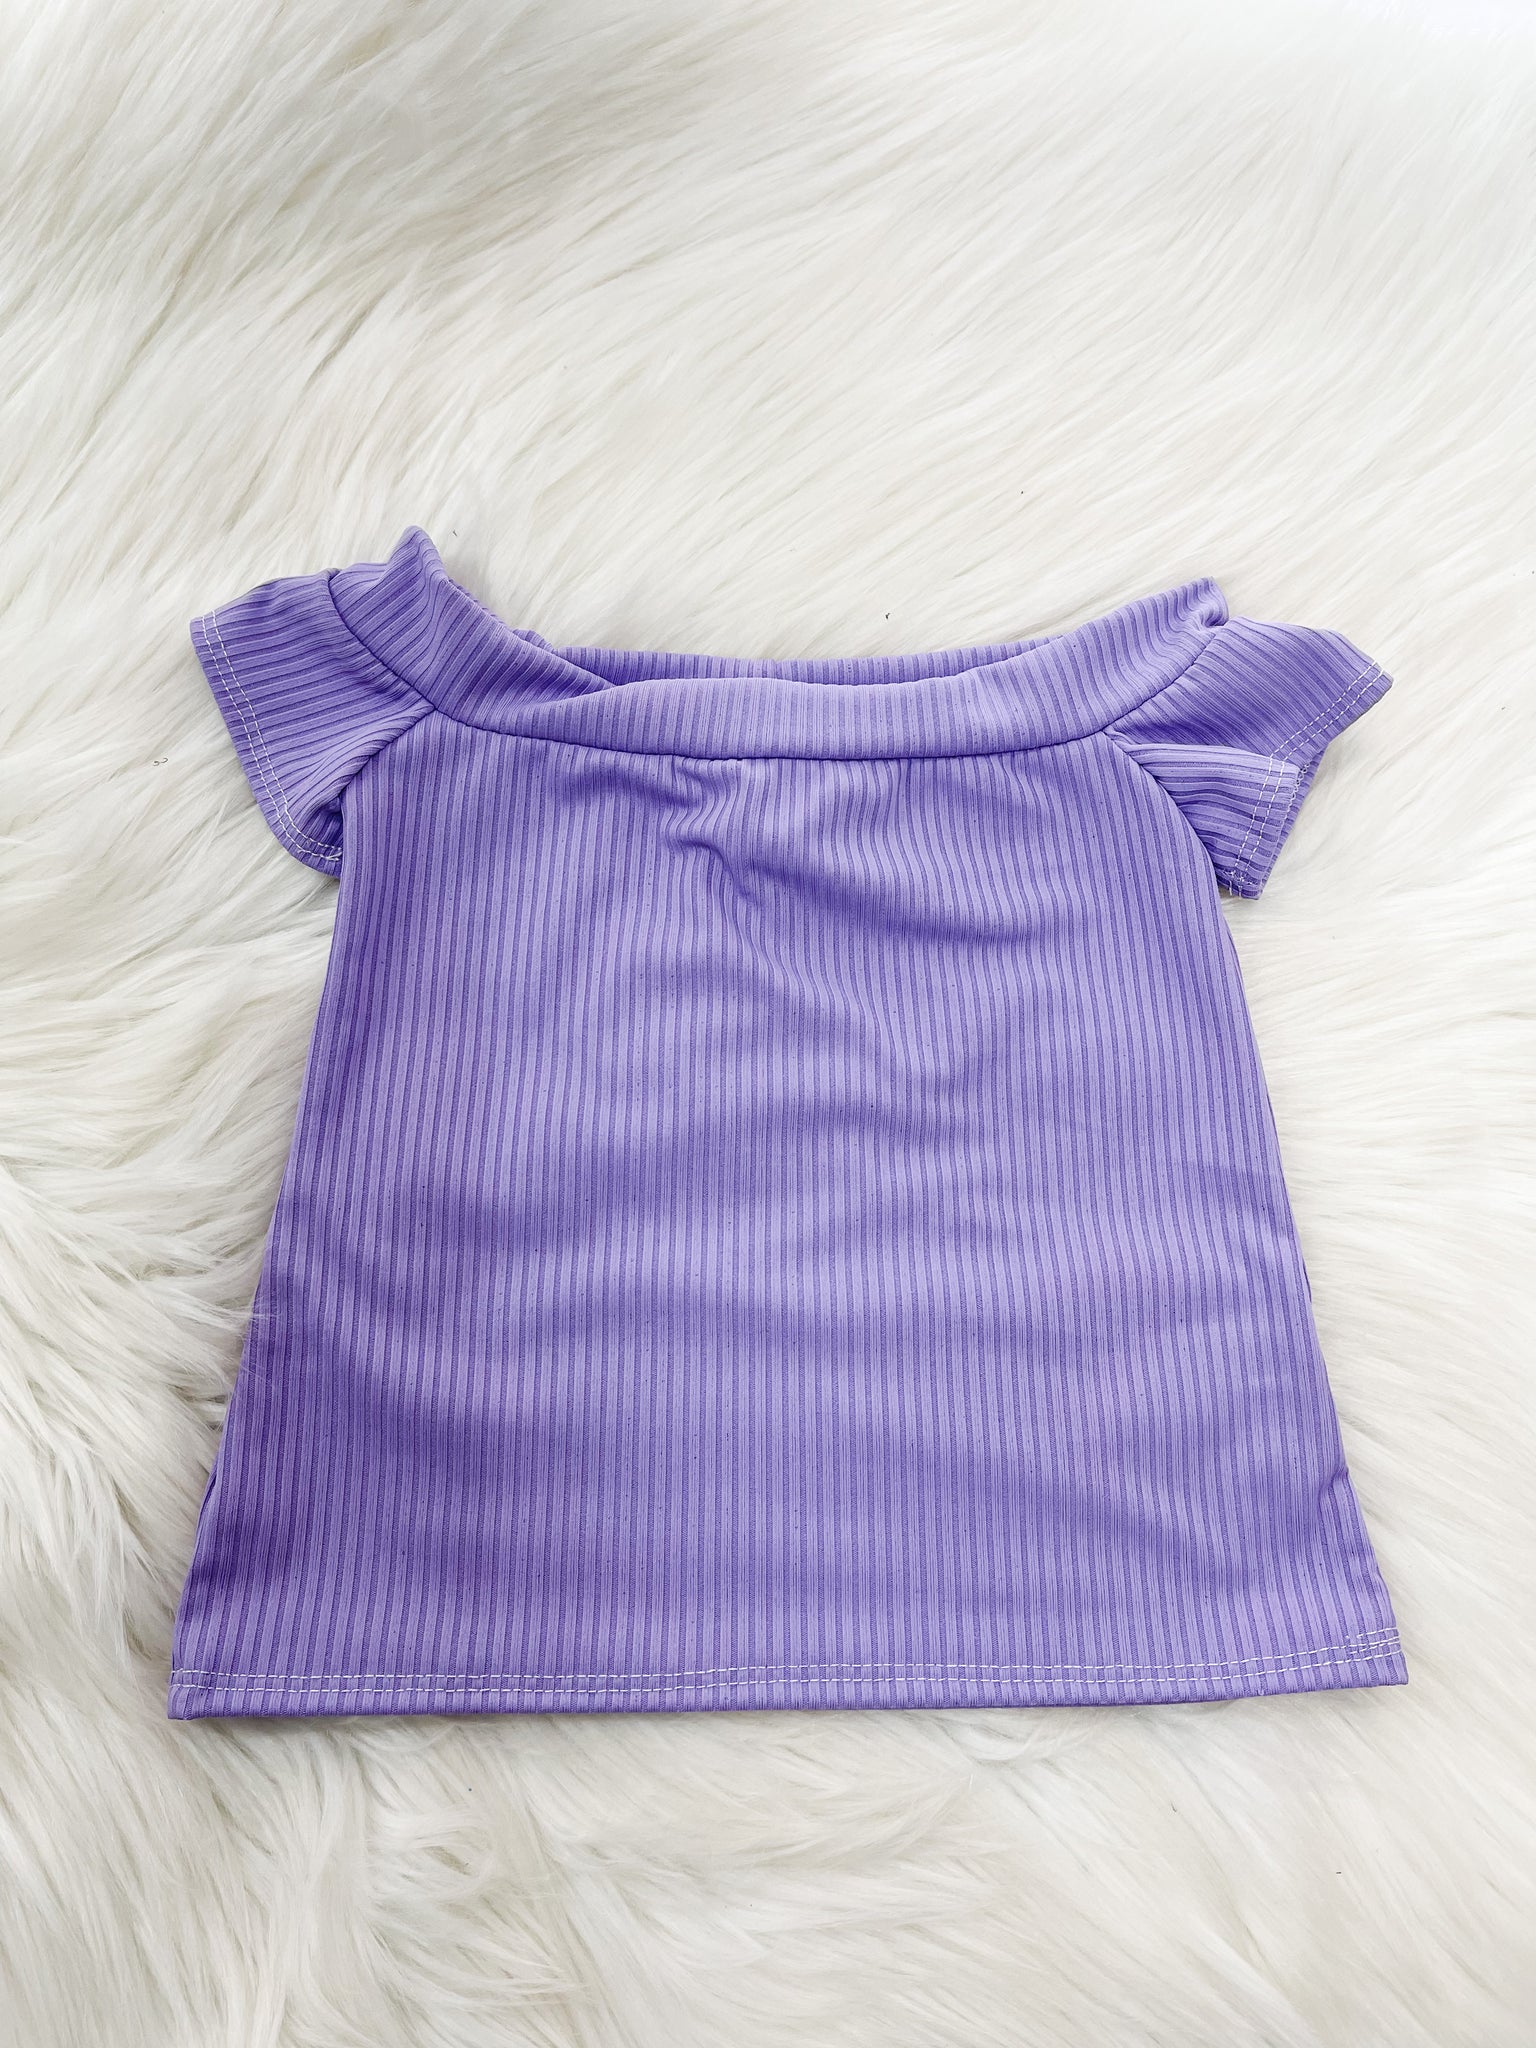 Purple  makayla style top